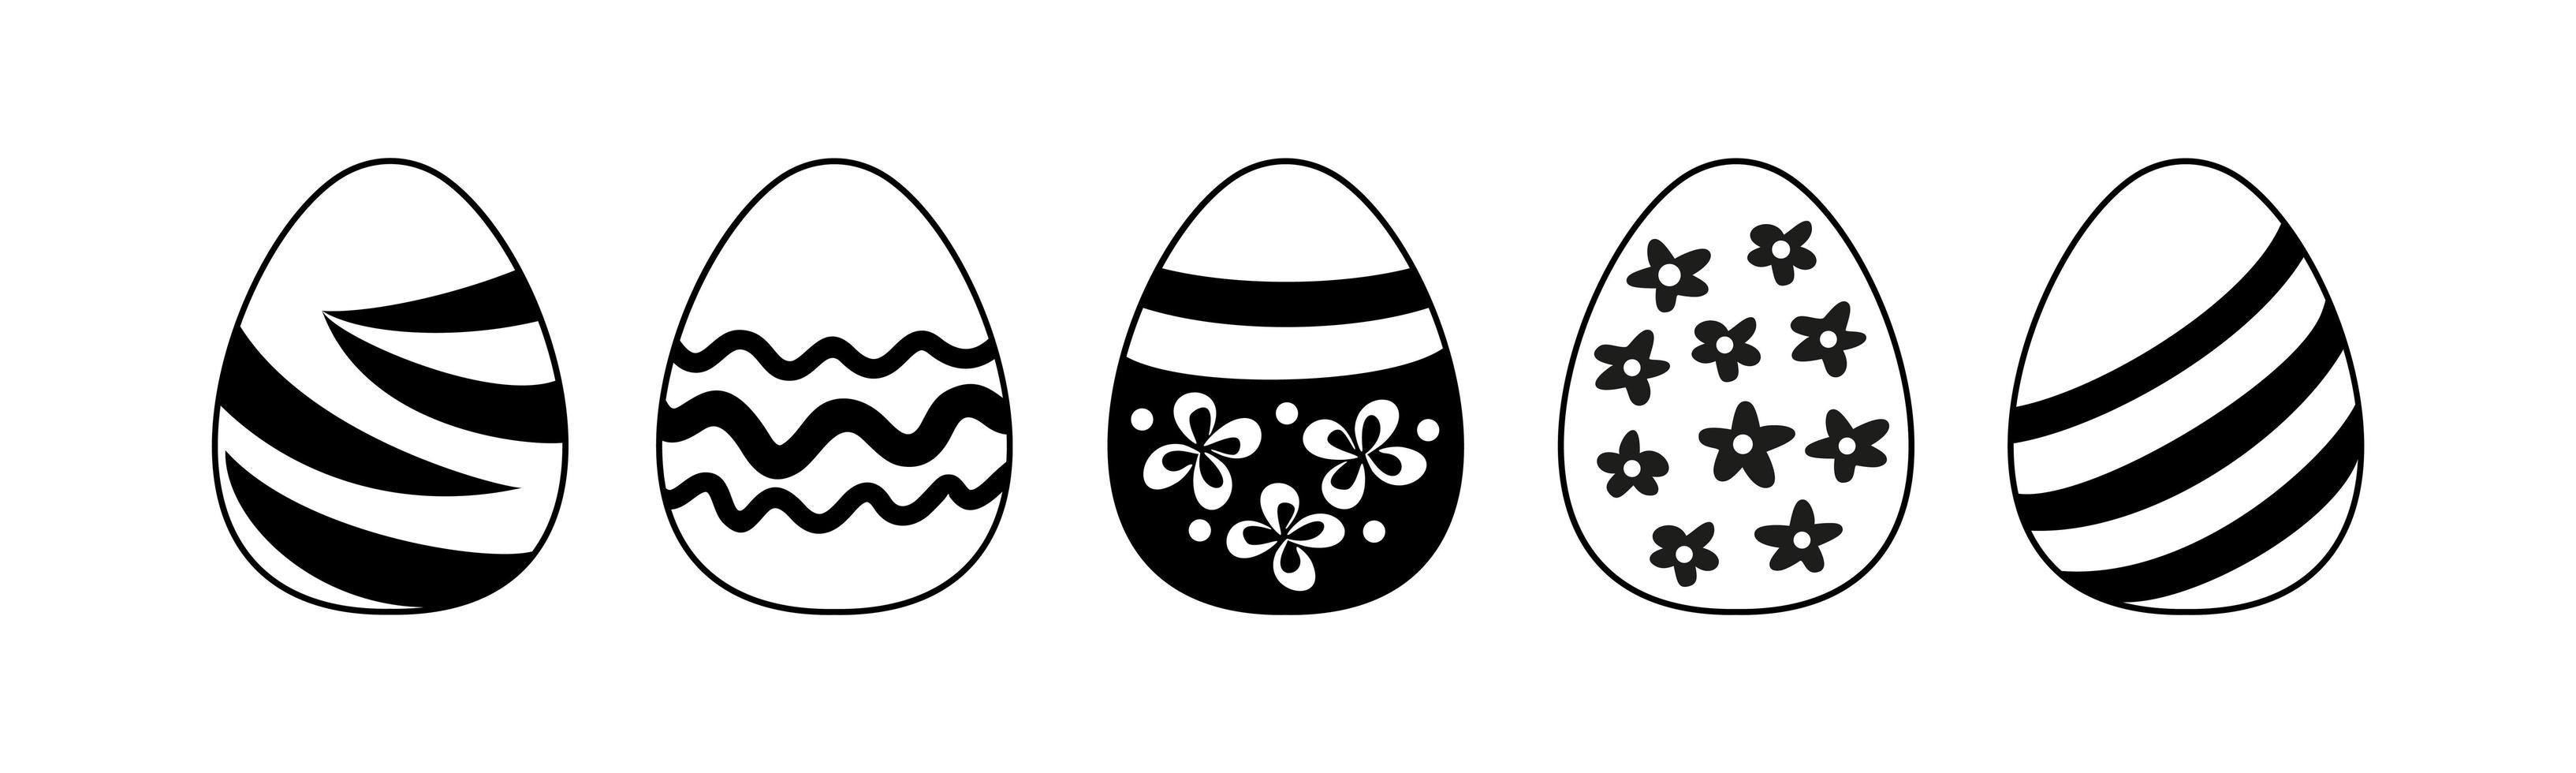 ovos de páscoa - ilustração em vetor preto e branco